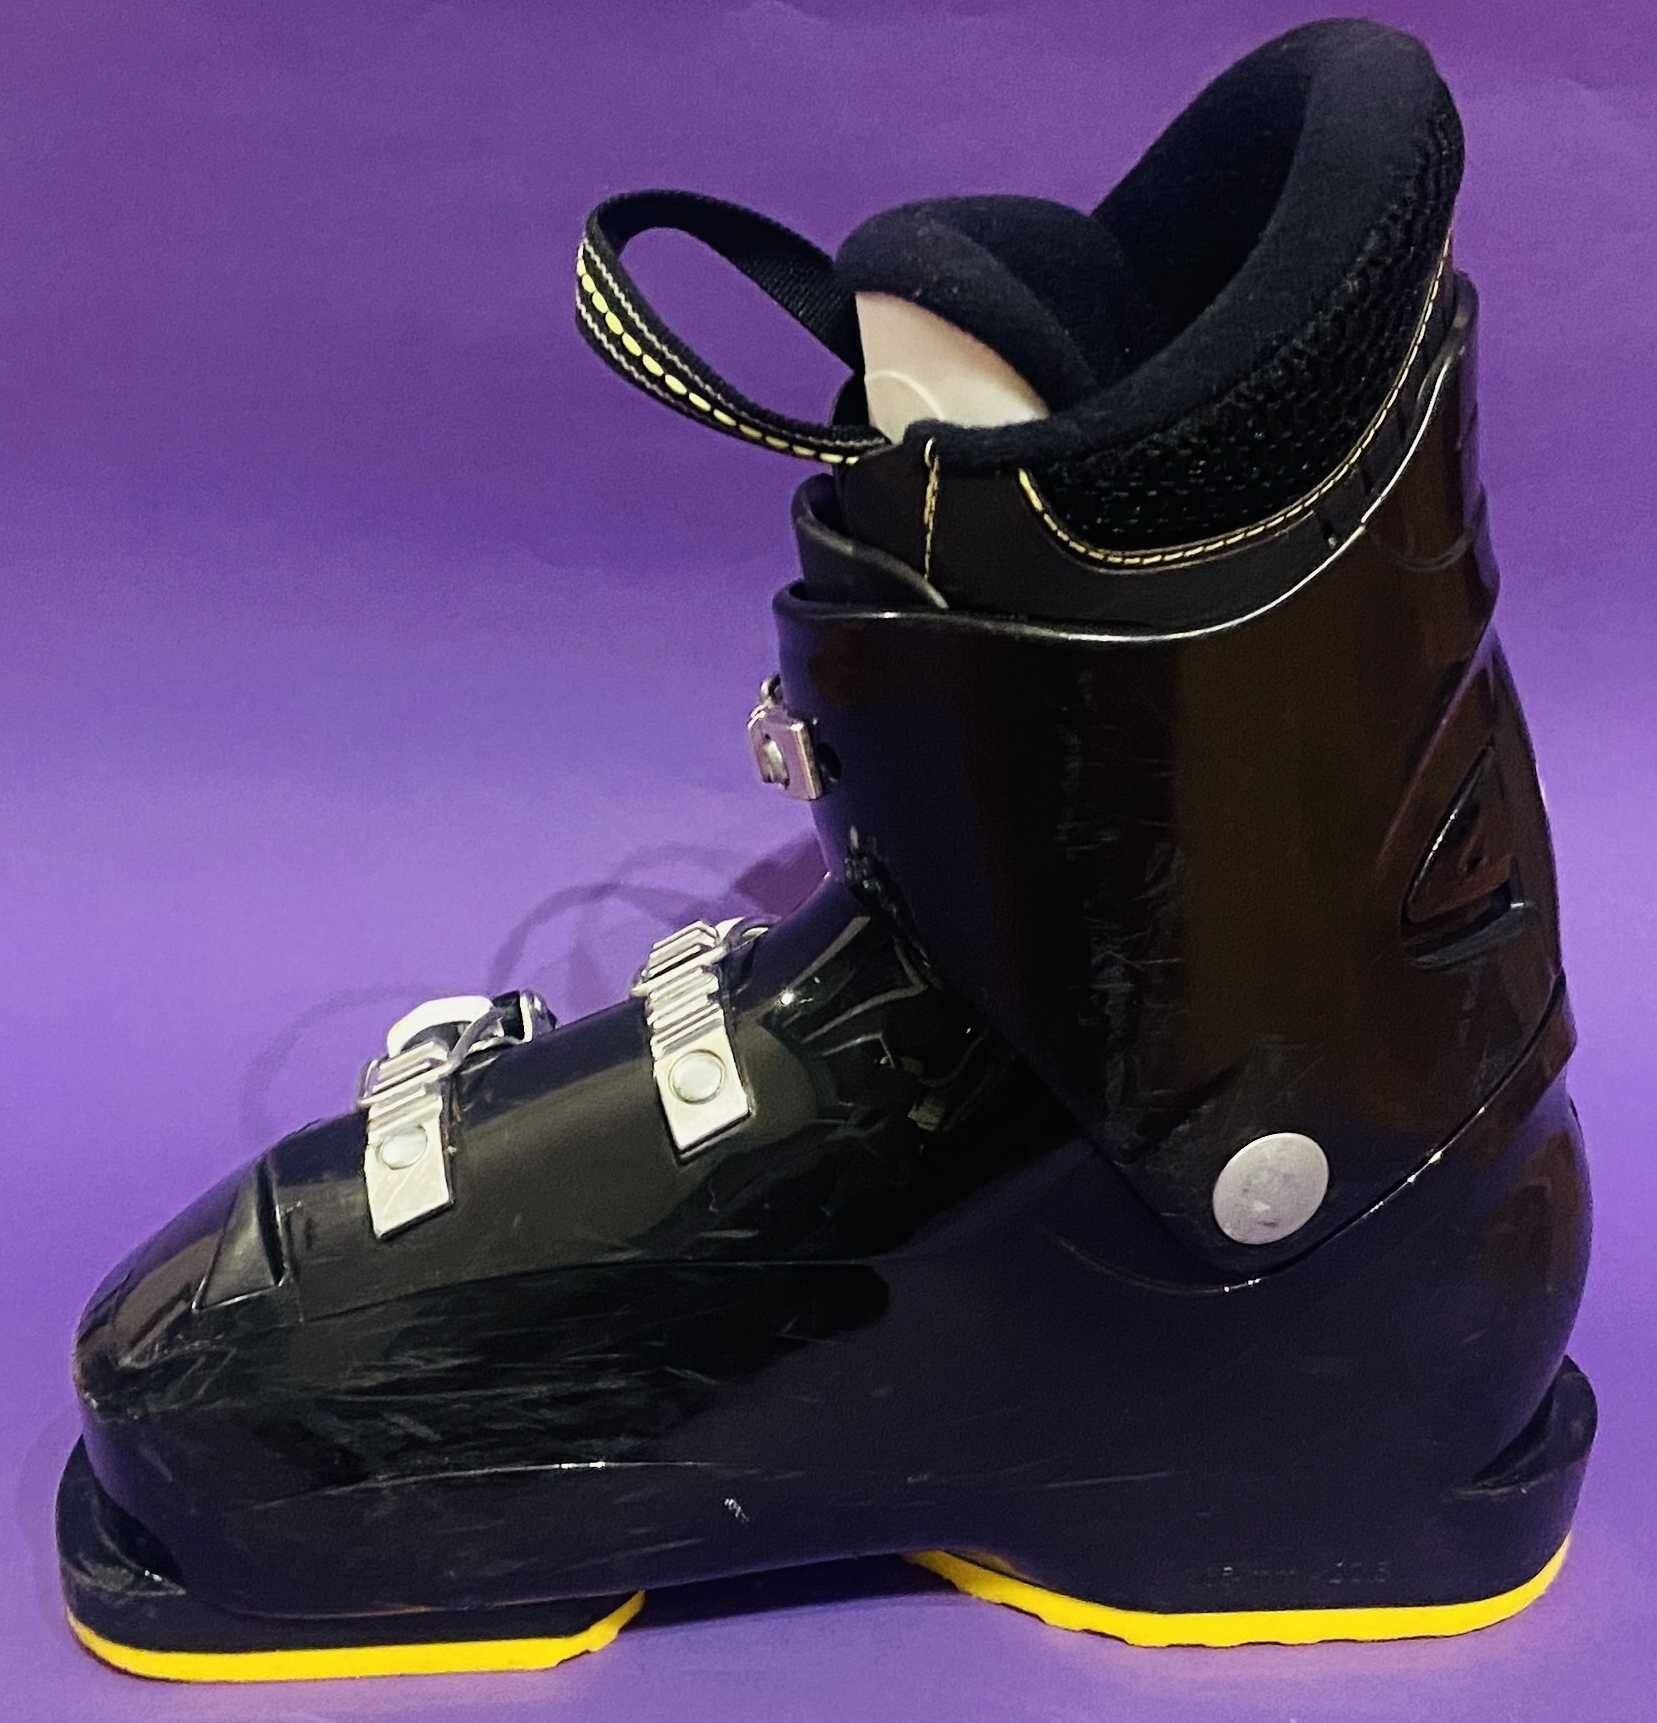 Buty narciarskie juniorskie ROSSIGOL COMP J3 wkładka 22,5 cm